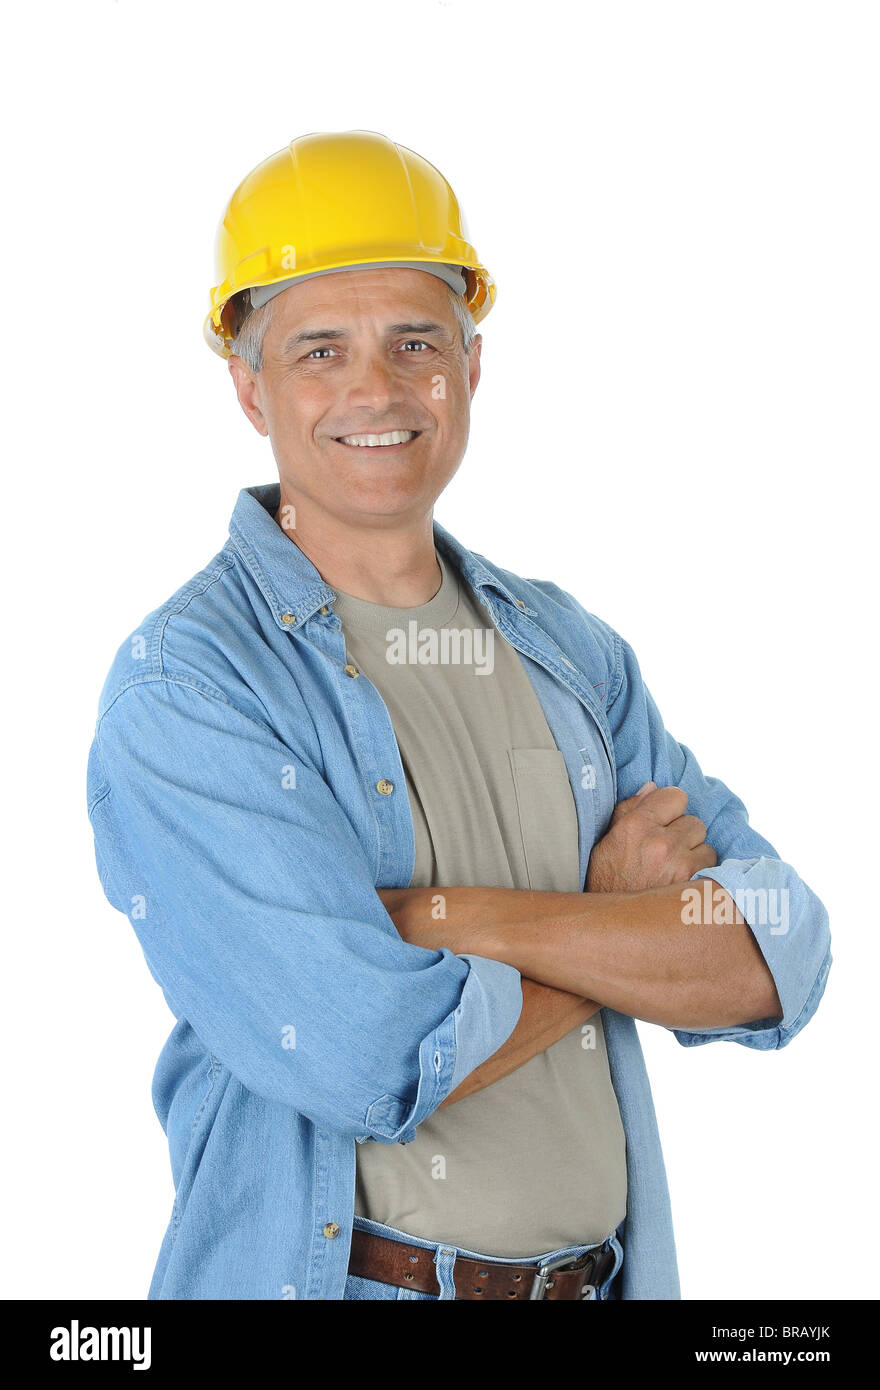 Arbeiter trägt einen gelben Schutzhelm und lächelt in die Kamera mit seinen Armen gekreuzt. Isoliert auf weiß in Hochformat. Stockfoto